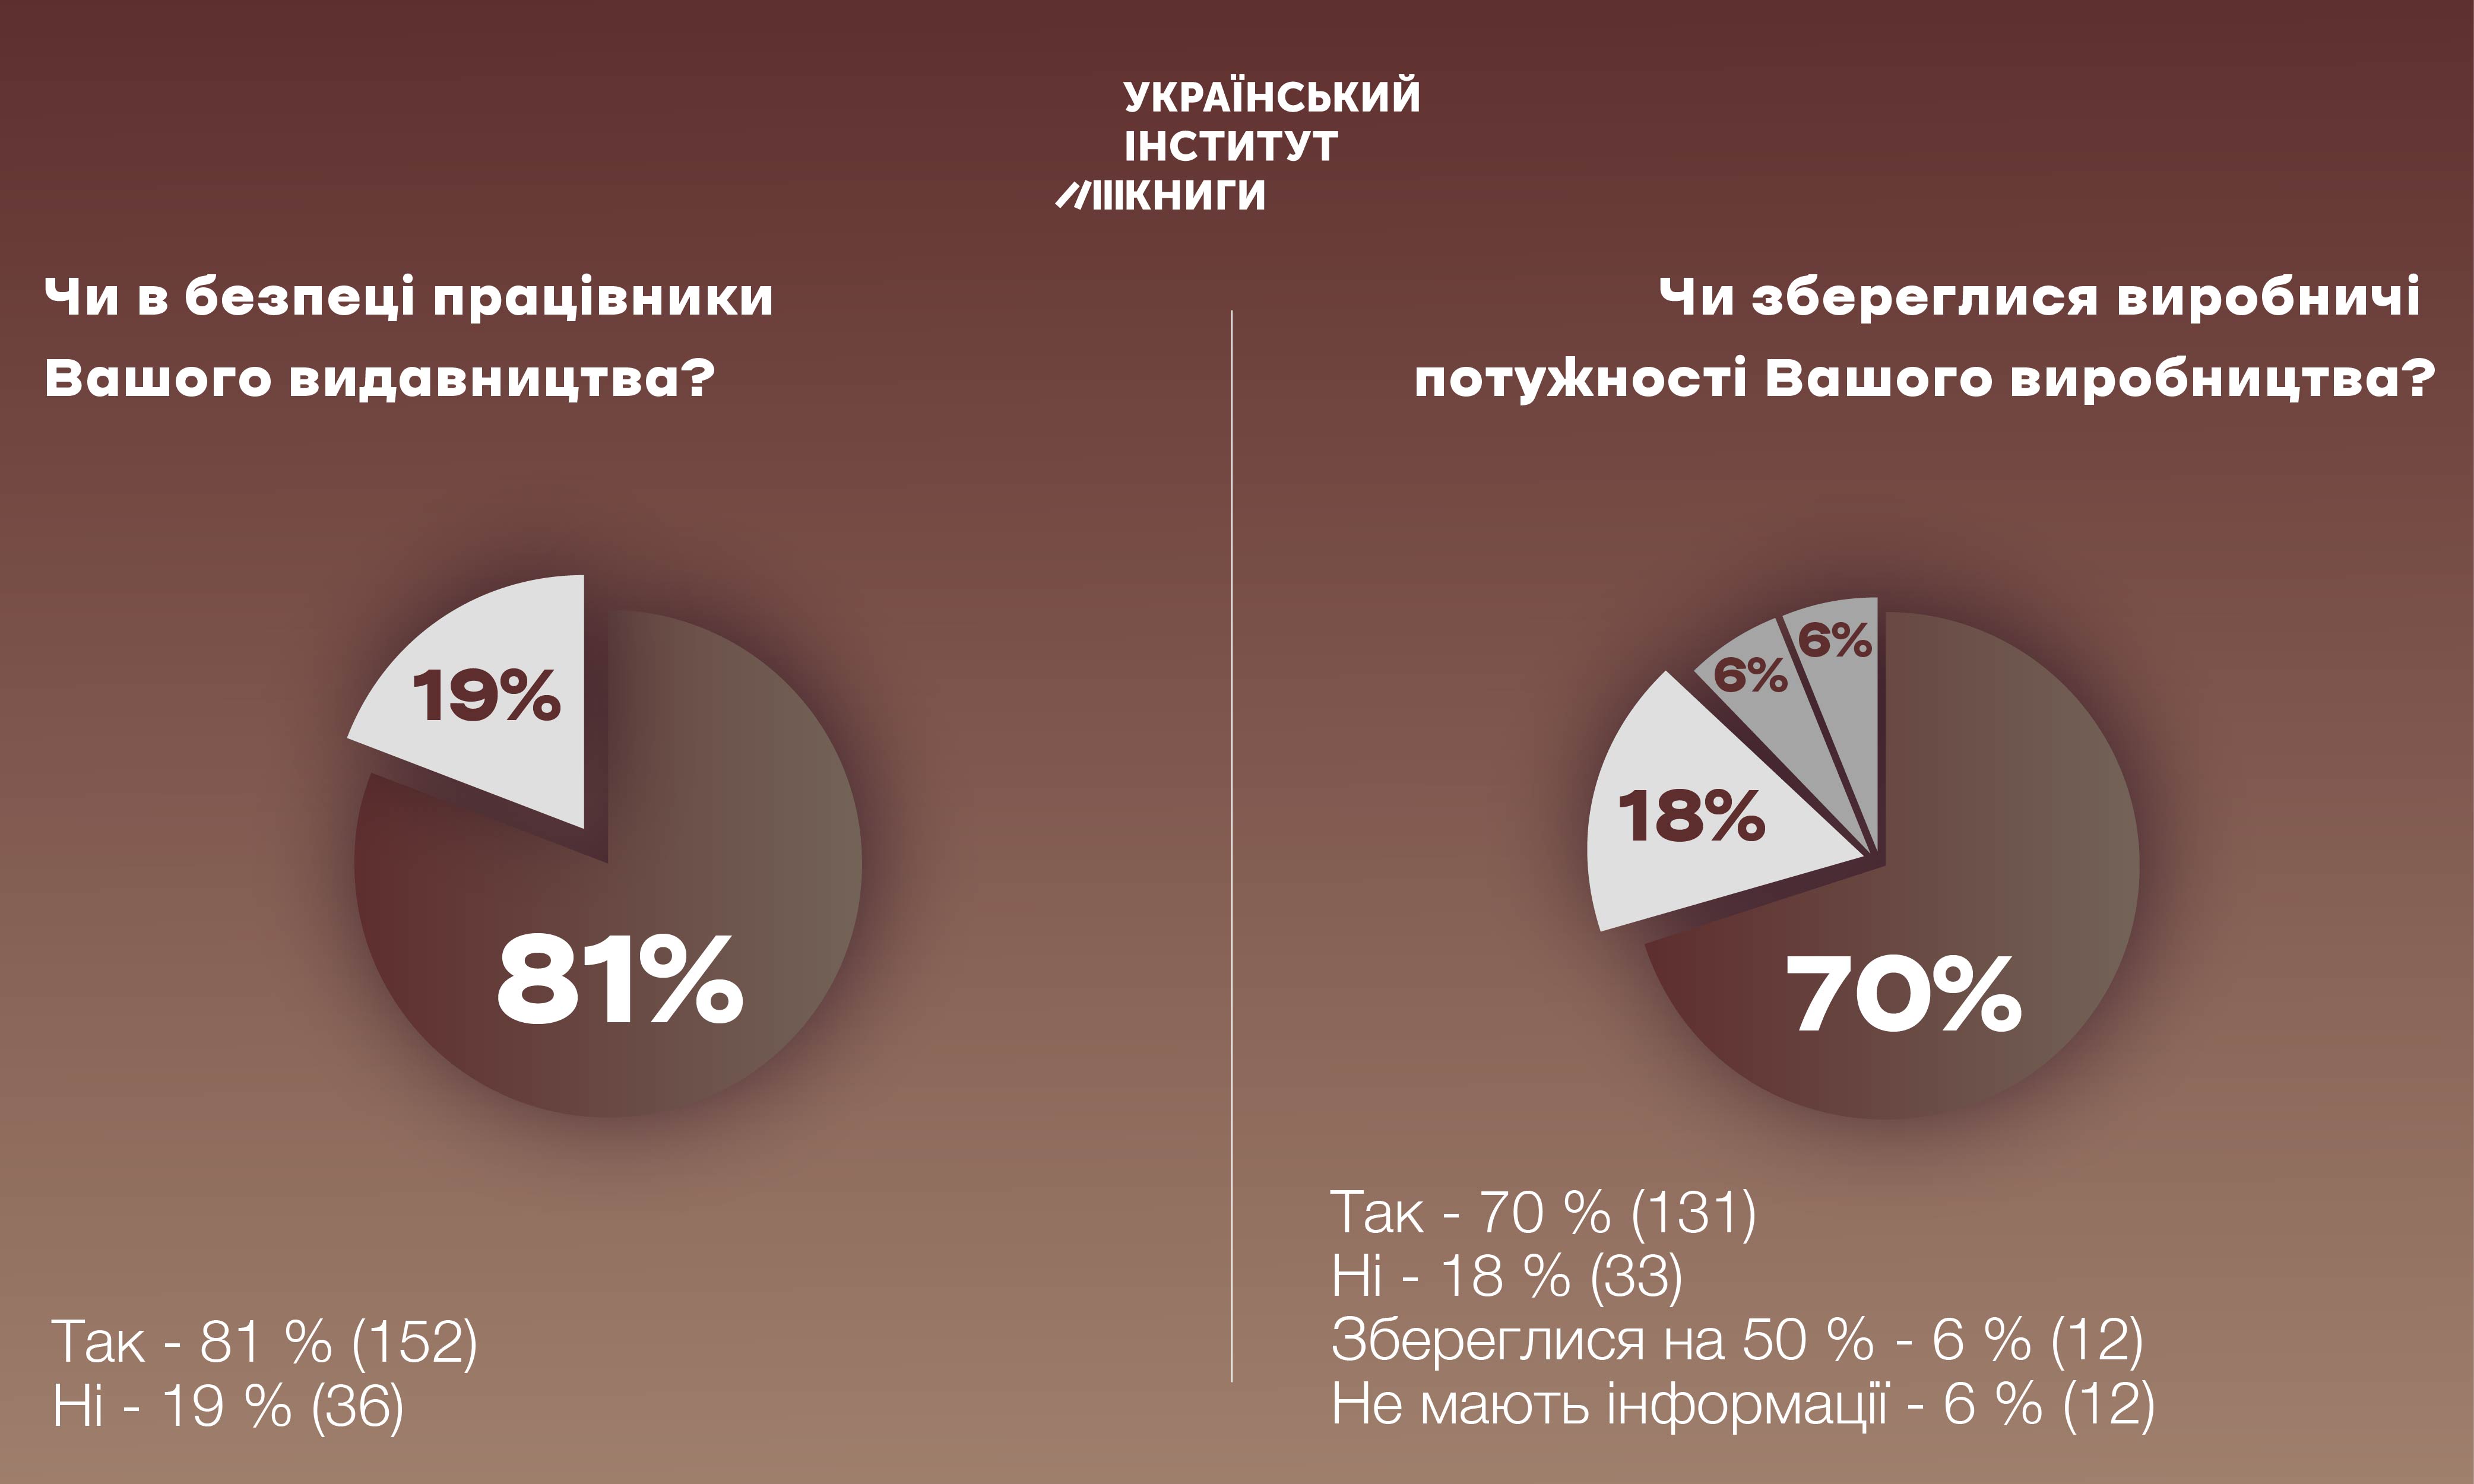 УІК провів опитування про стан українських видавців під час війни: лише 32% видавців можуть повноцінно працювати